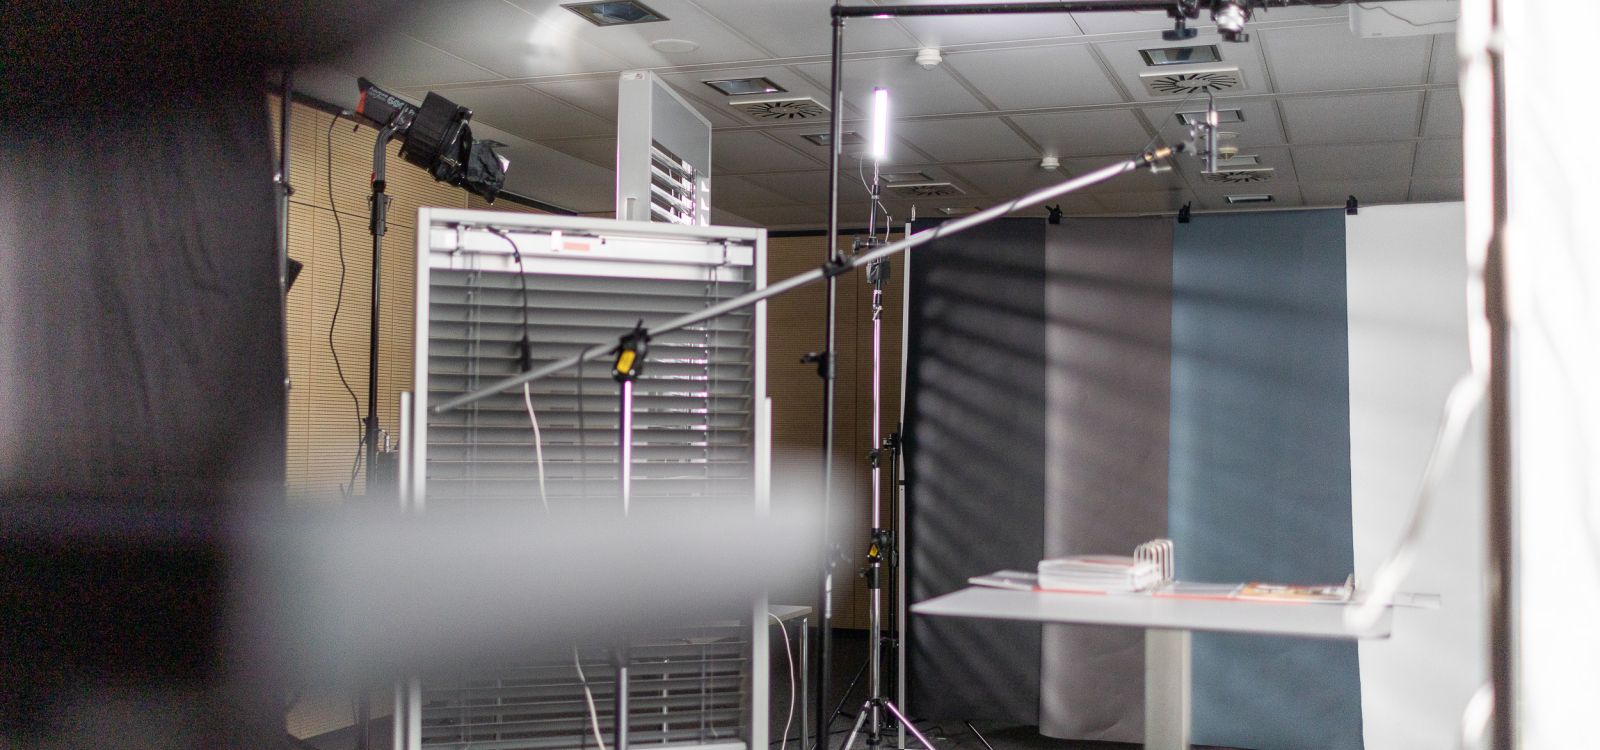 Filmstudio in einem Besprechungsraum aufgebaut und ausgeleuchtet - Set-Design der Filmproduktion